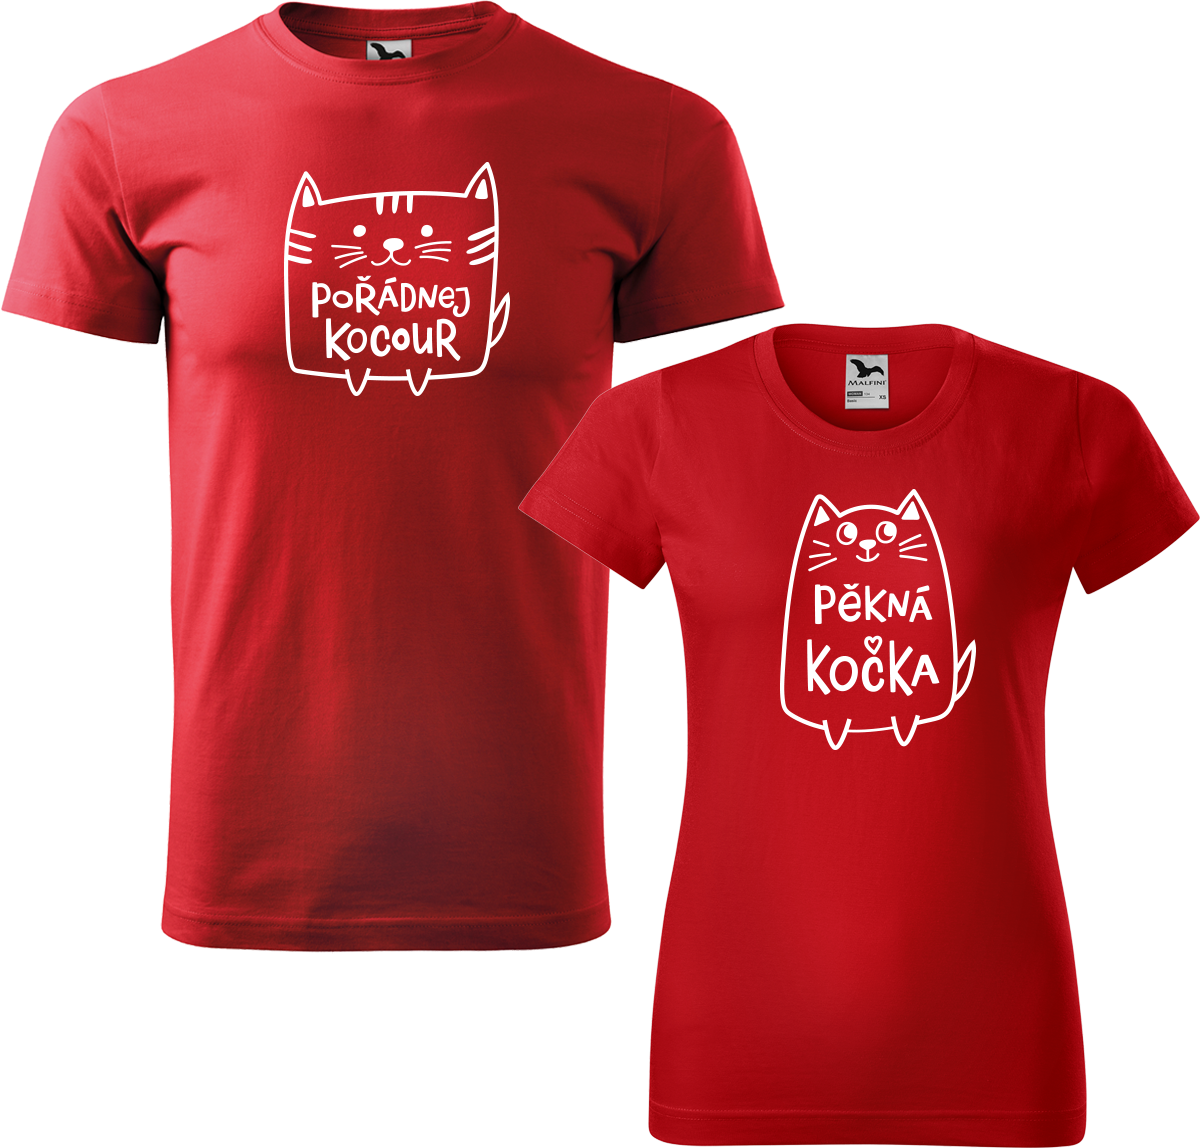 Trička pro páry - Pořádnej kocour a pěkná kočka Barva: Červená (07), Velikost dámské tričko: S, Velikost pánské tričko: XL